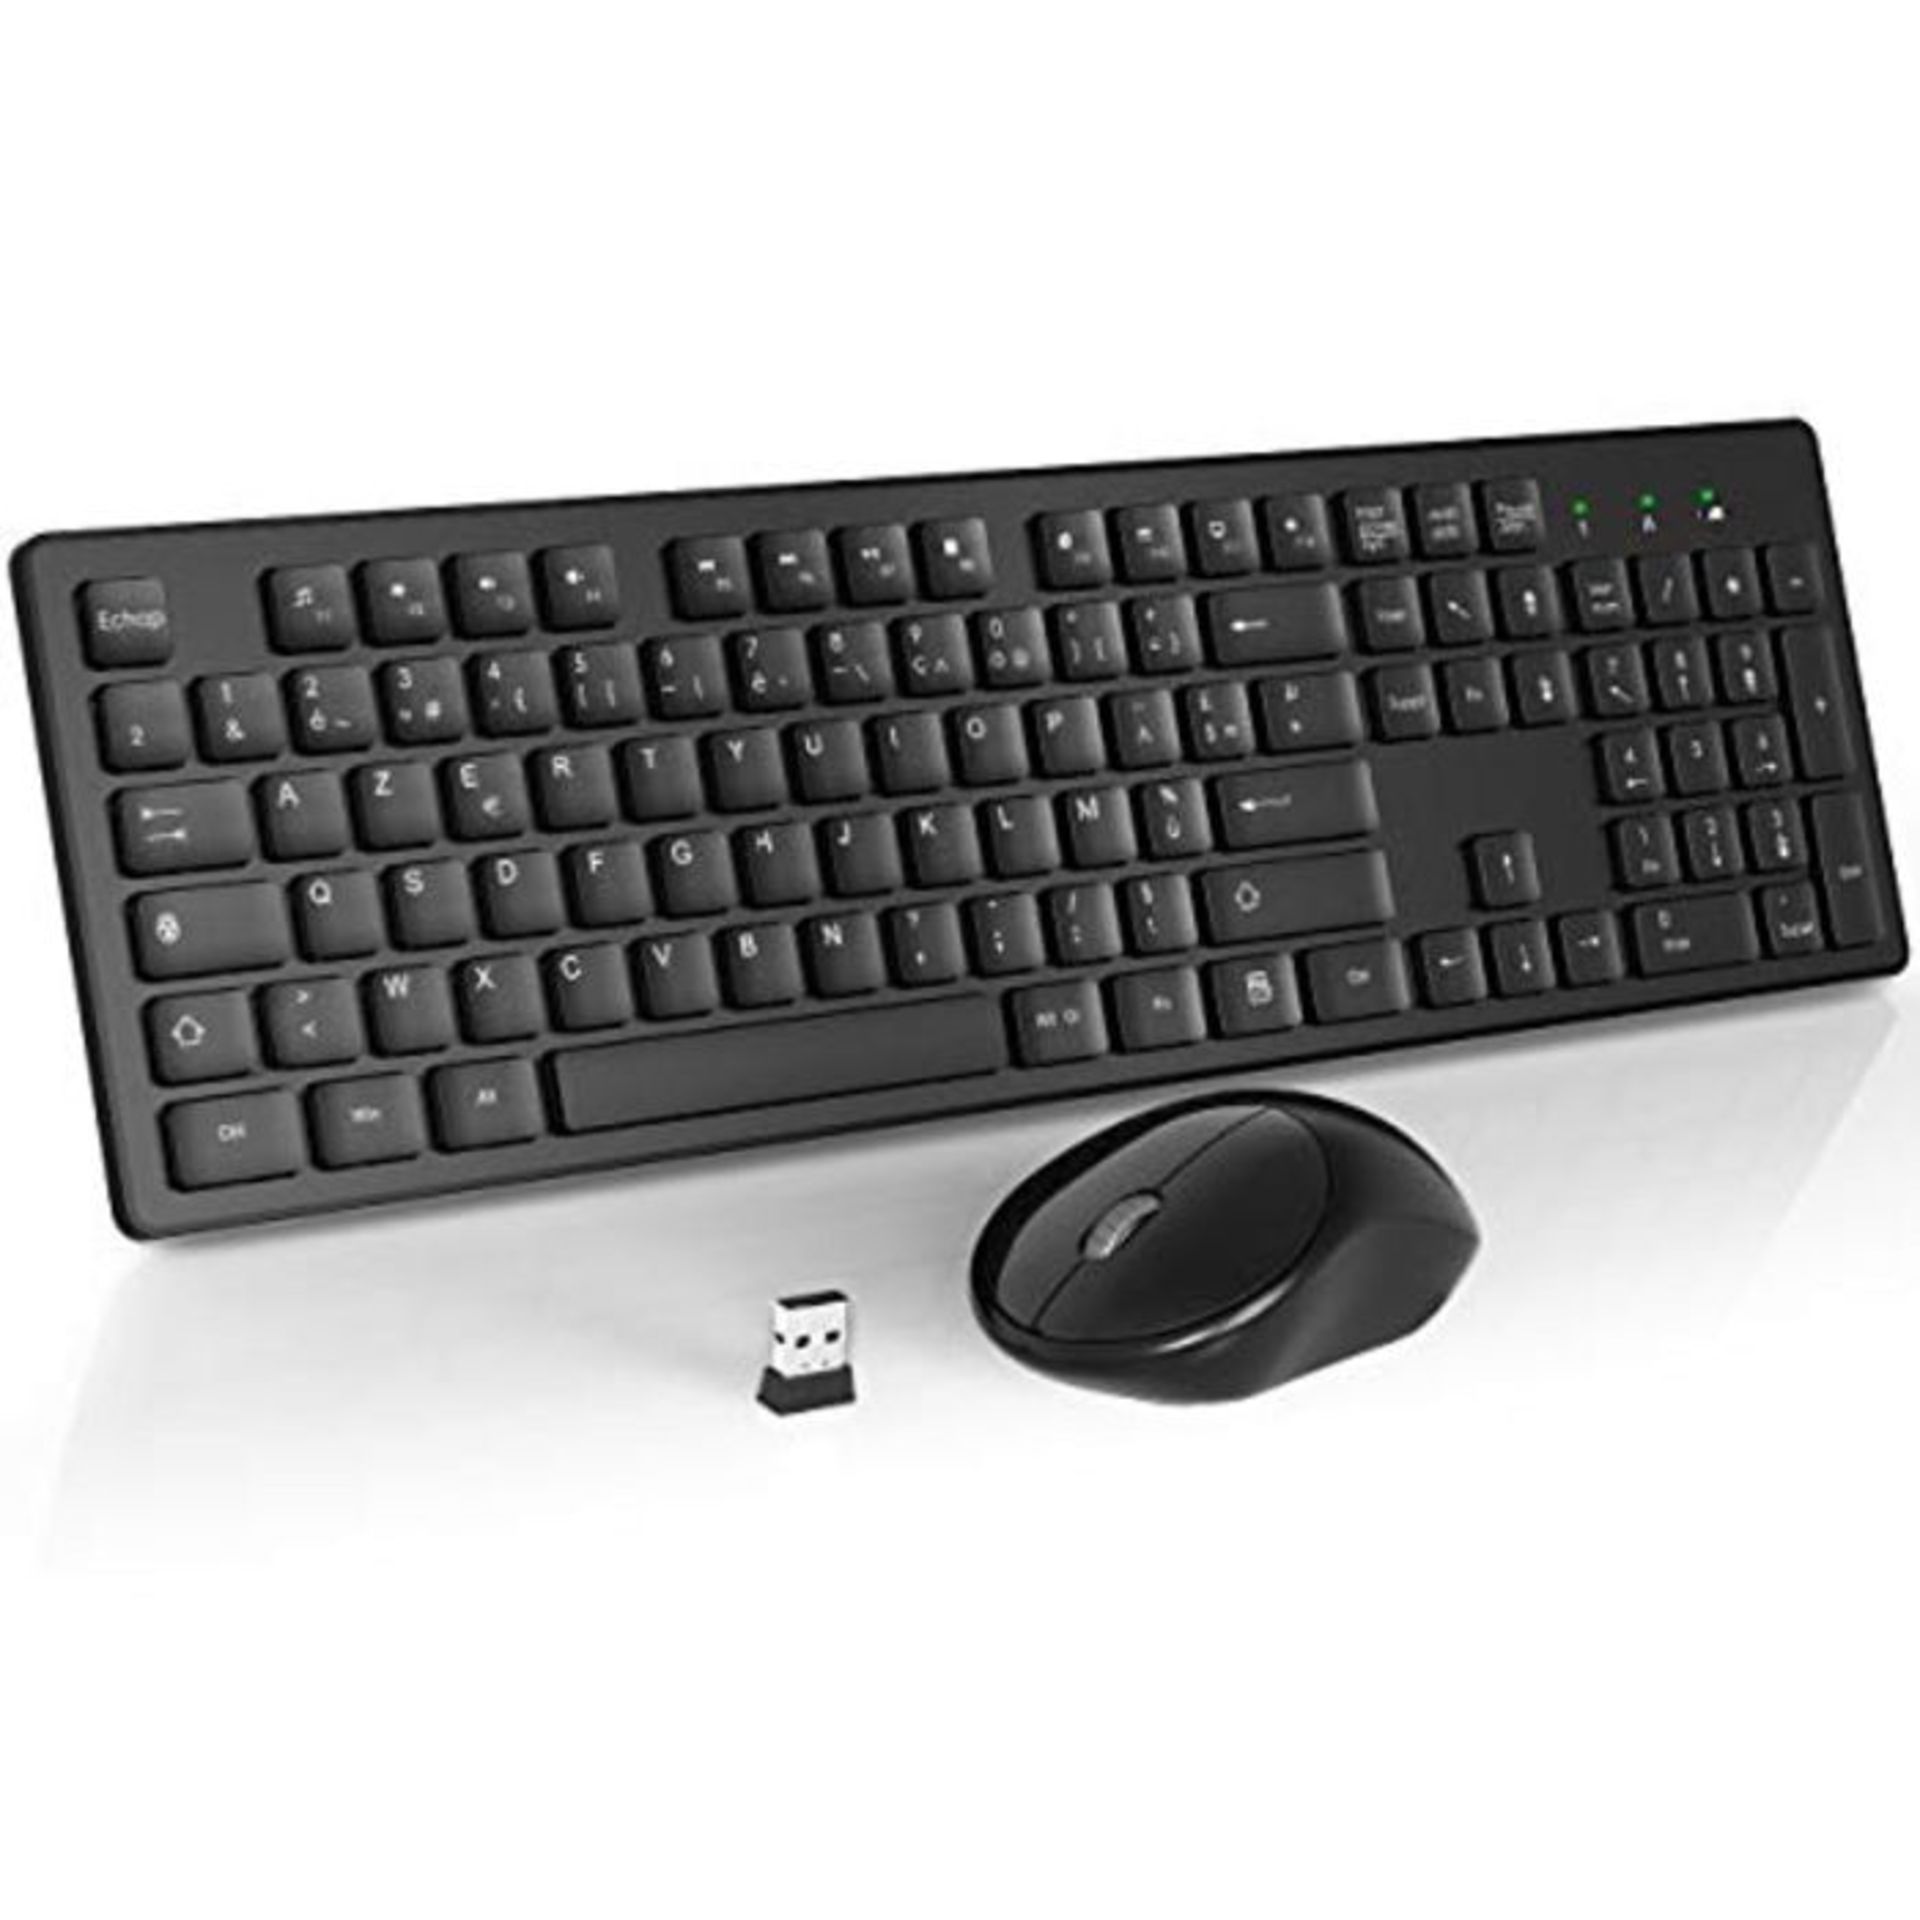 WisFox Wireless Keyboard Mouse Combined, 2.4 GHz Slim Full Size Silent Wireless Keyboa